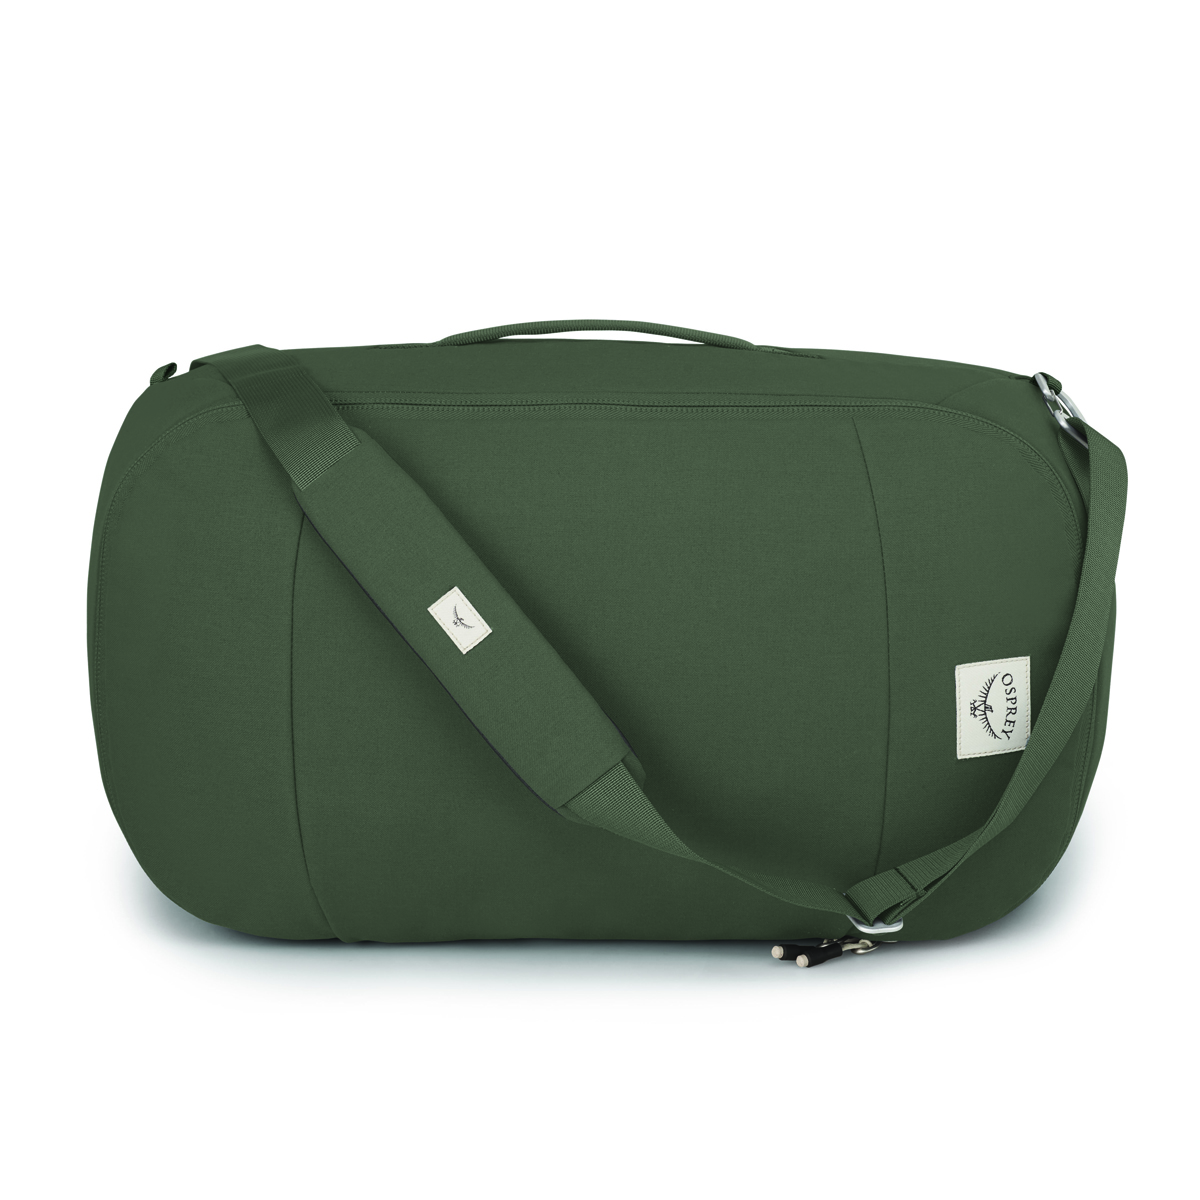 オスプレーパック メンズ ボストンバッグ Bag 65L バッグ Pine Arcane Leaf Waterproof Duffel Green